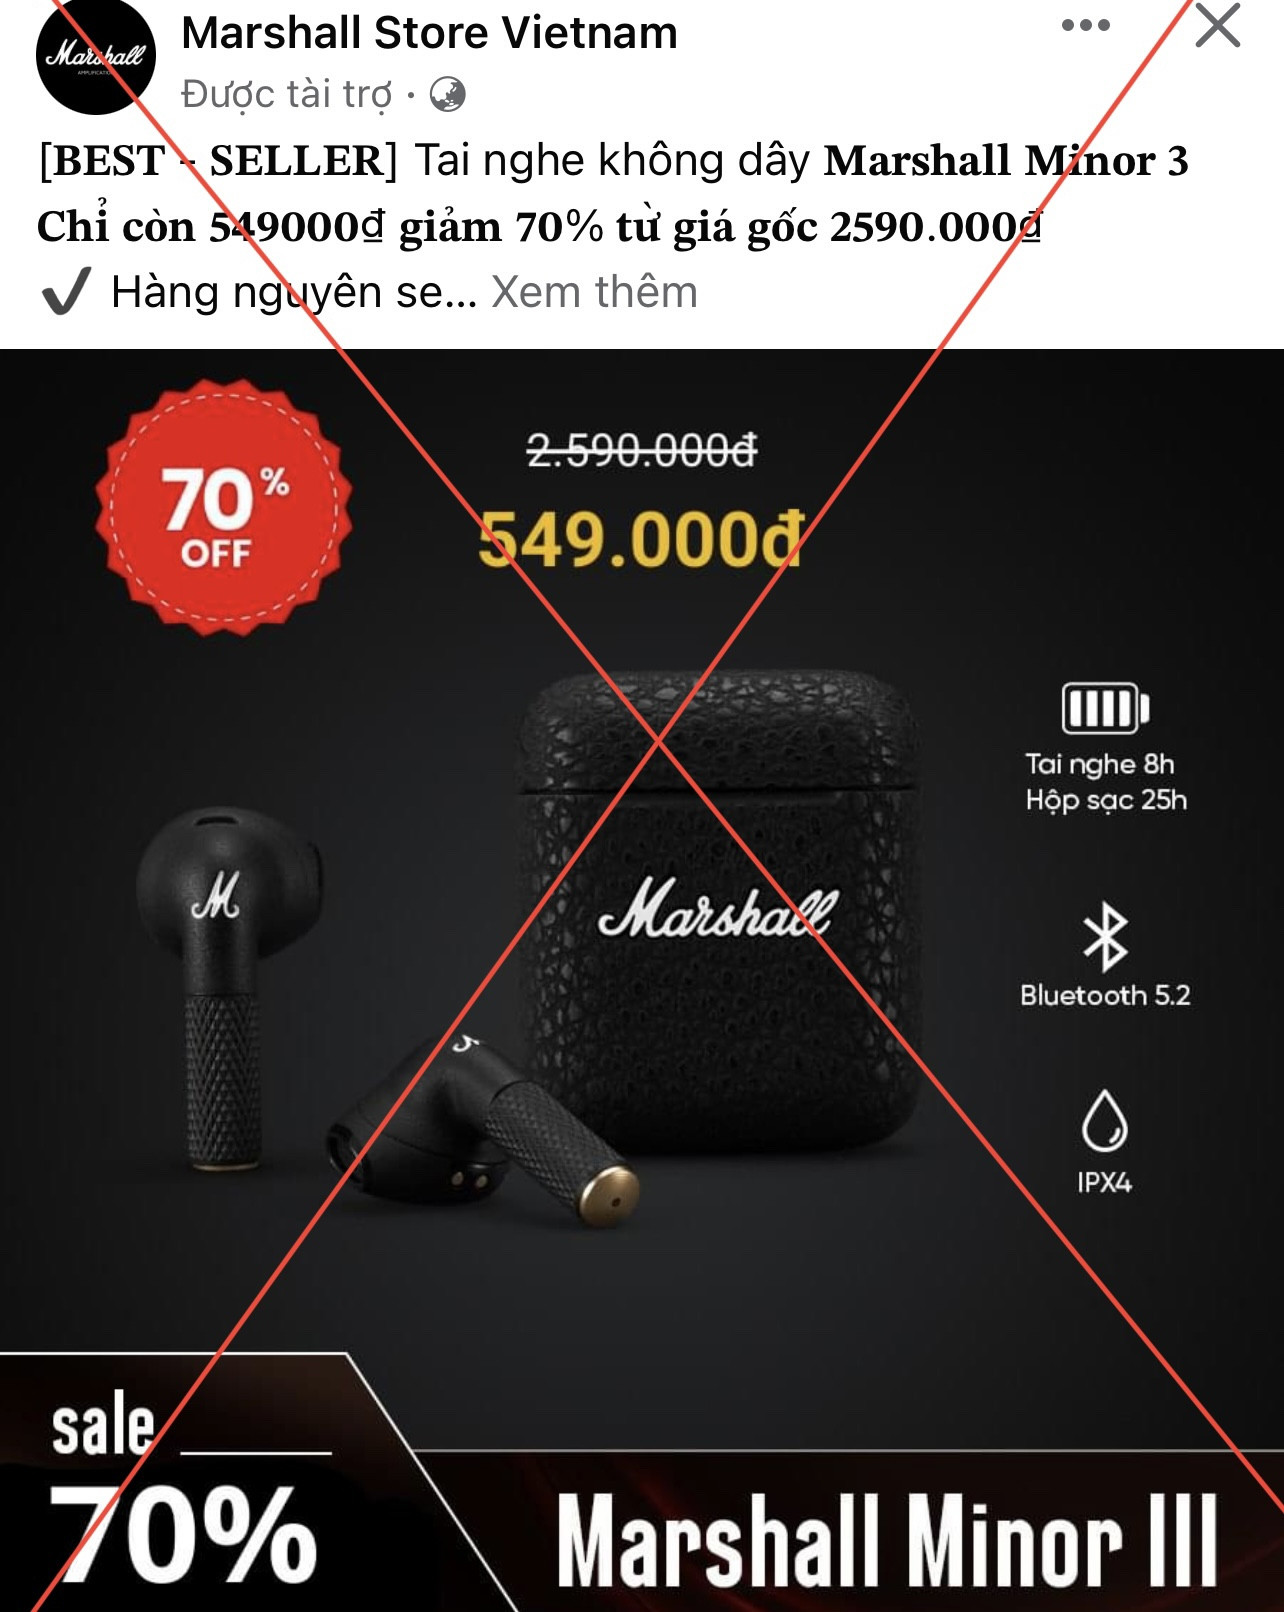 Tràn ngập fanpage giả mạo rao bán tai nghe Samsung, Marshall giảm giá tới 70% - Ảnh 4.